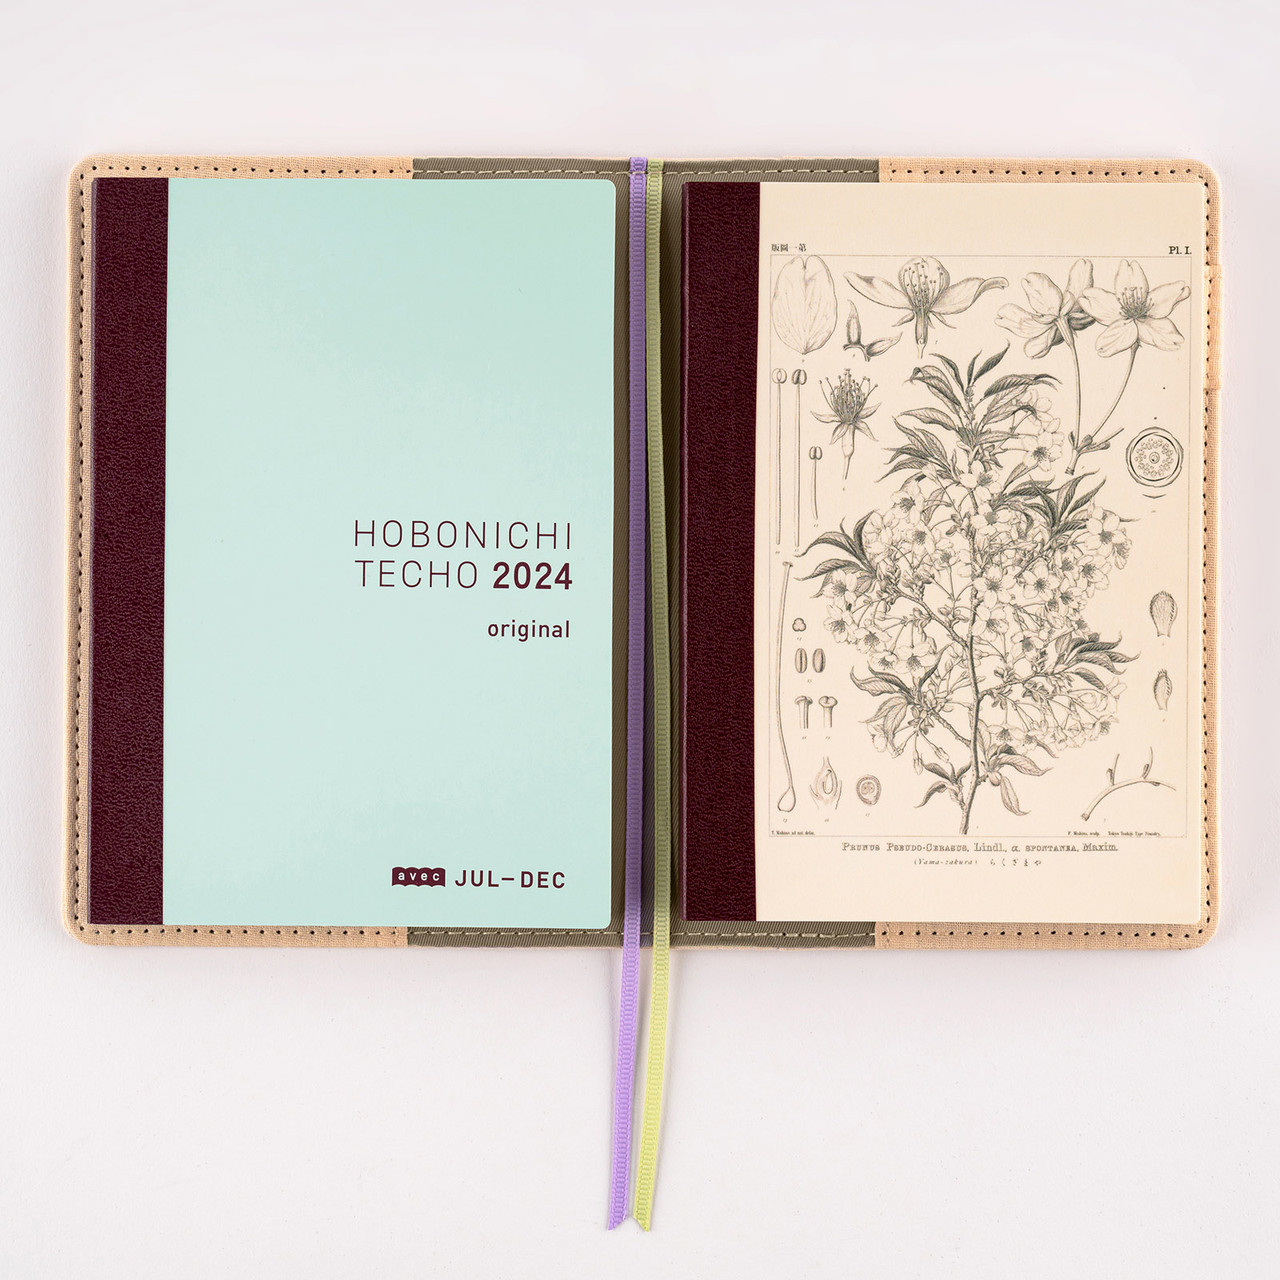 Hobonichi Plain Notebooks - A6, Graph - Anderson Pens, Inc.